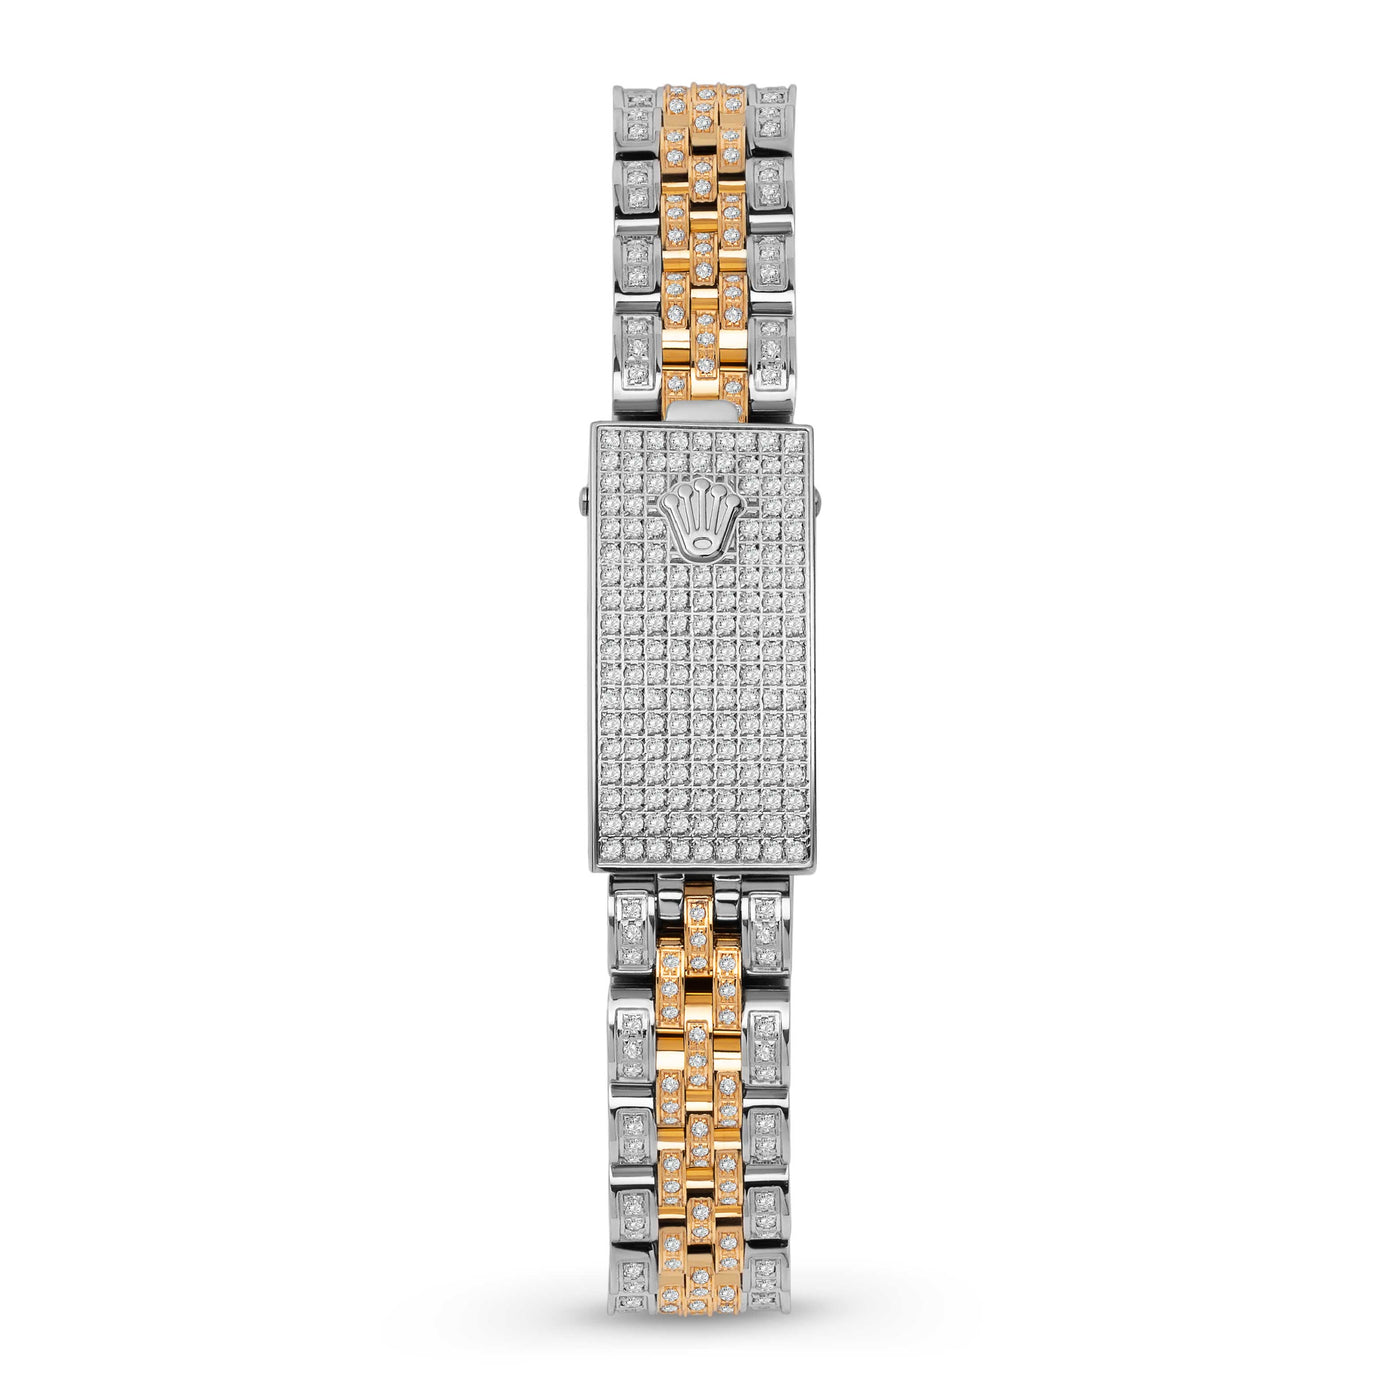 Women Rolex Datejust Diamond Bezel Watch 26mm Red Dial | 6.20ct